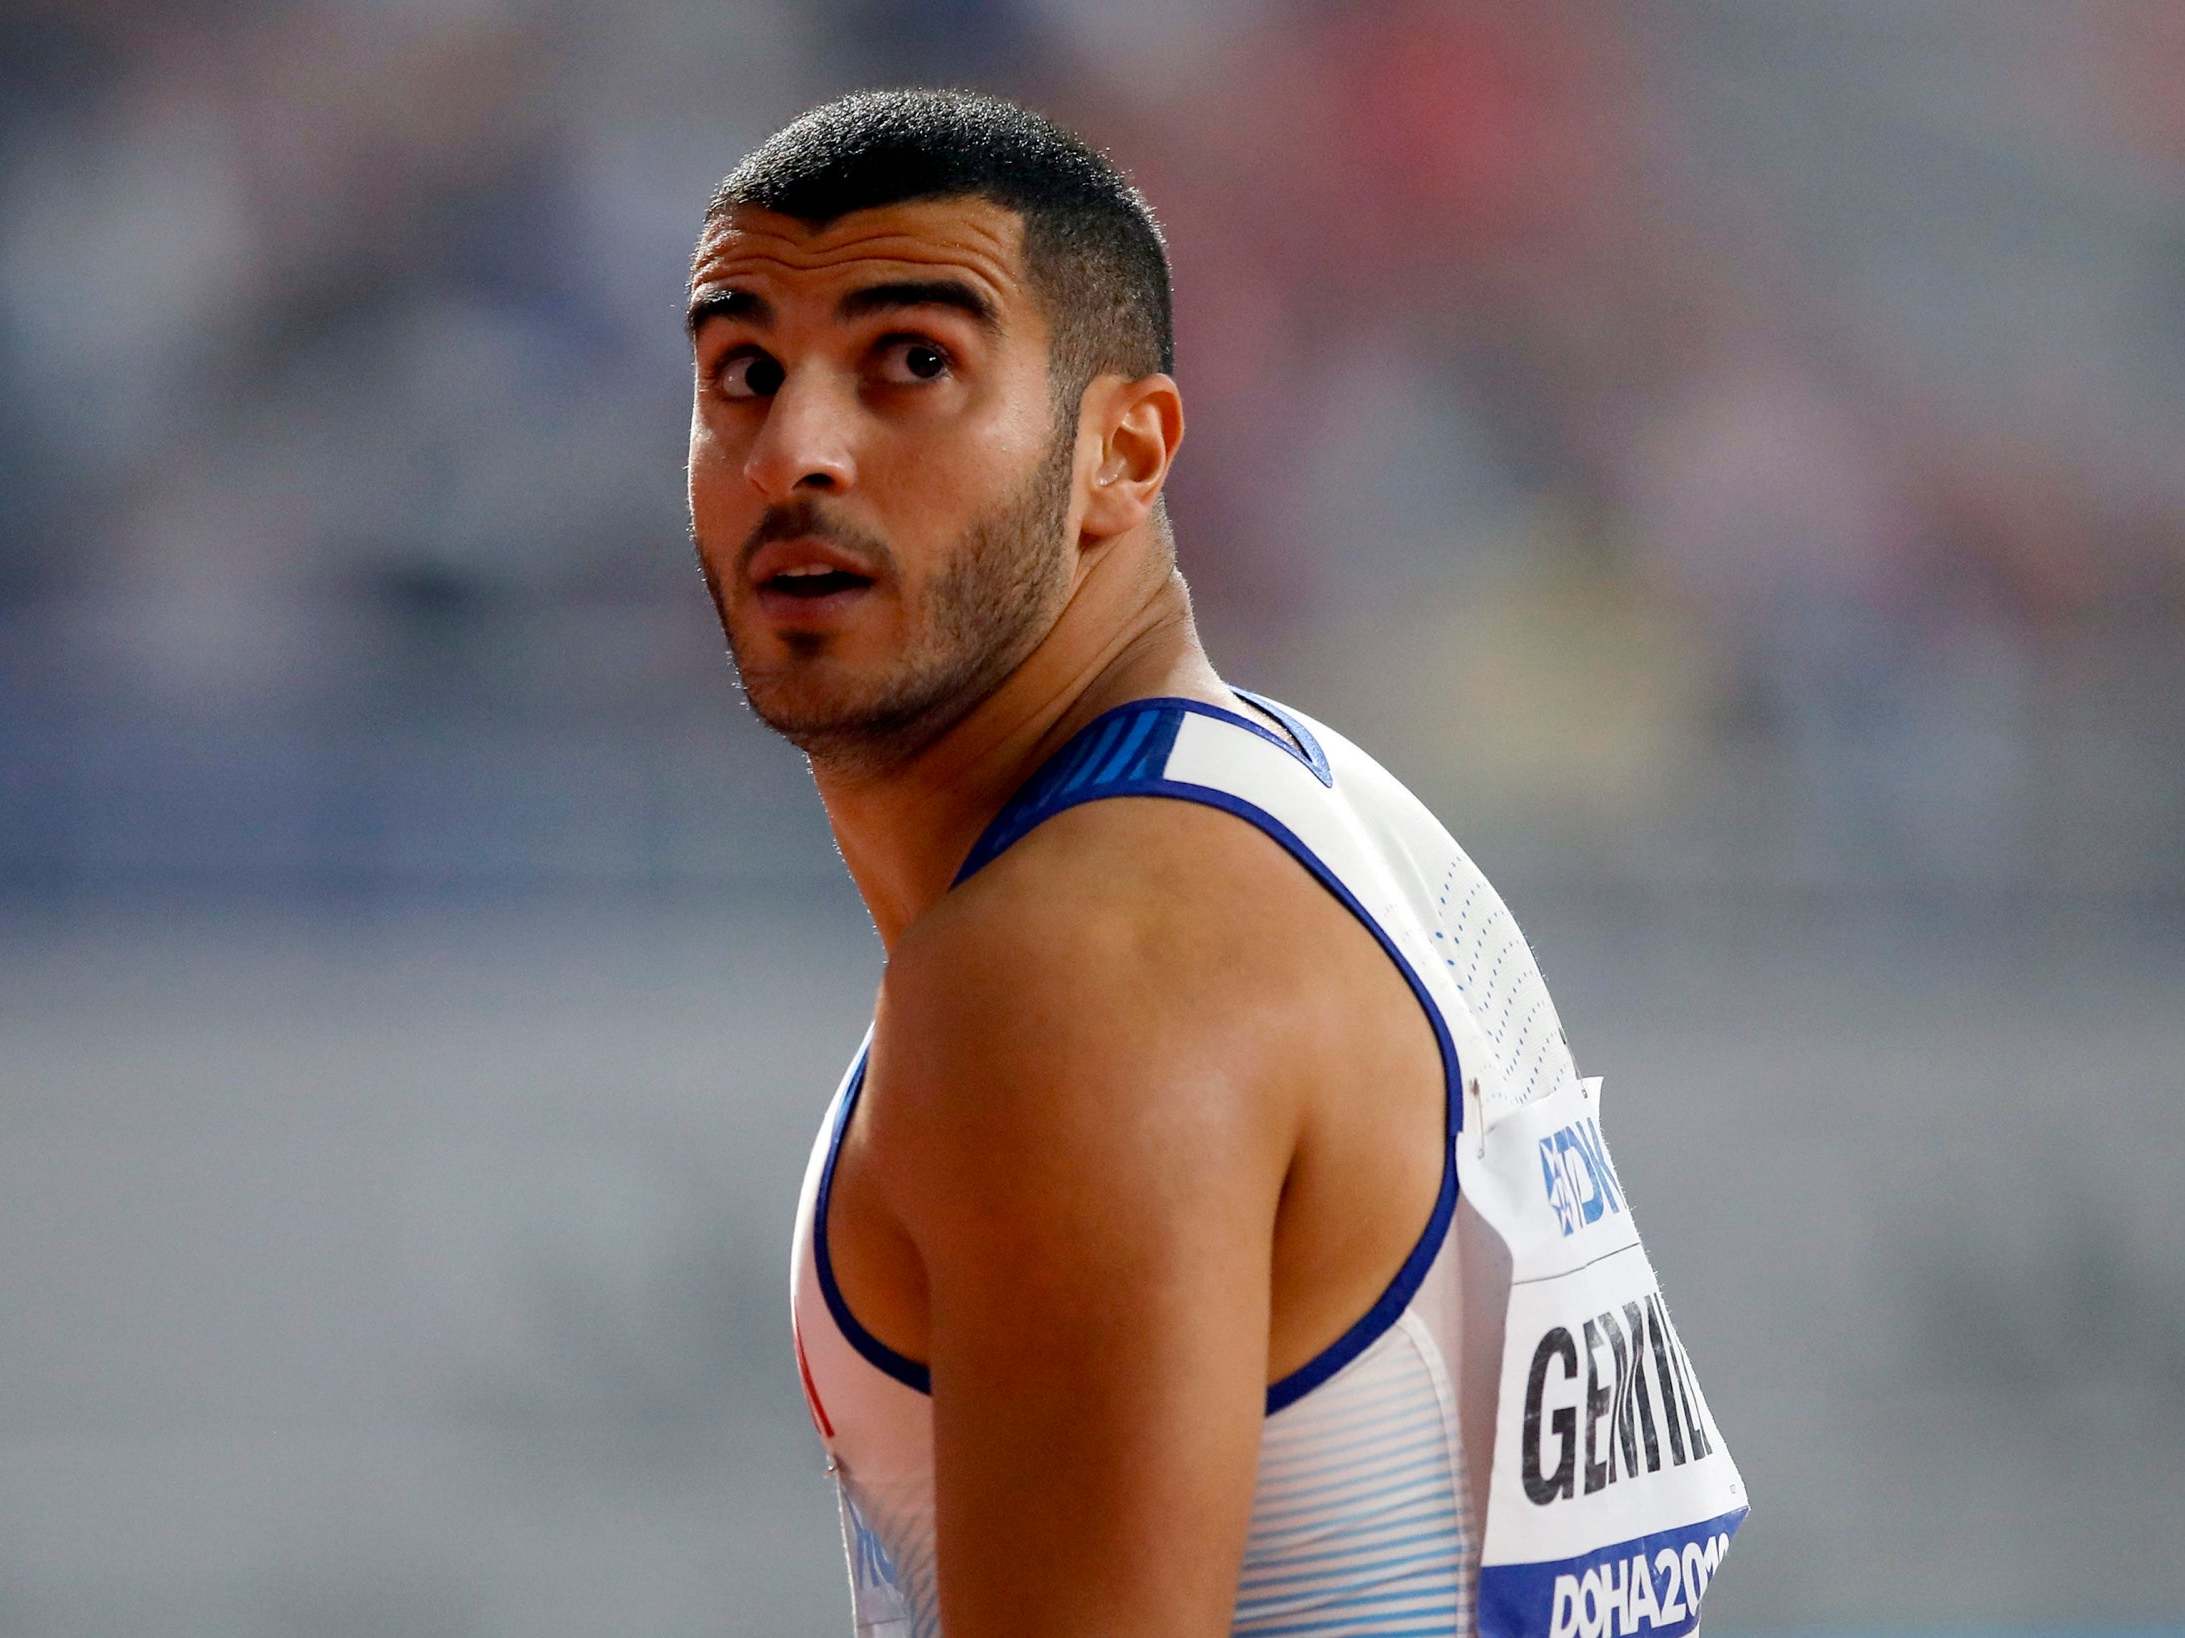 Adam Gemili reacts to winning his 200m heat